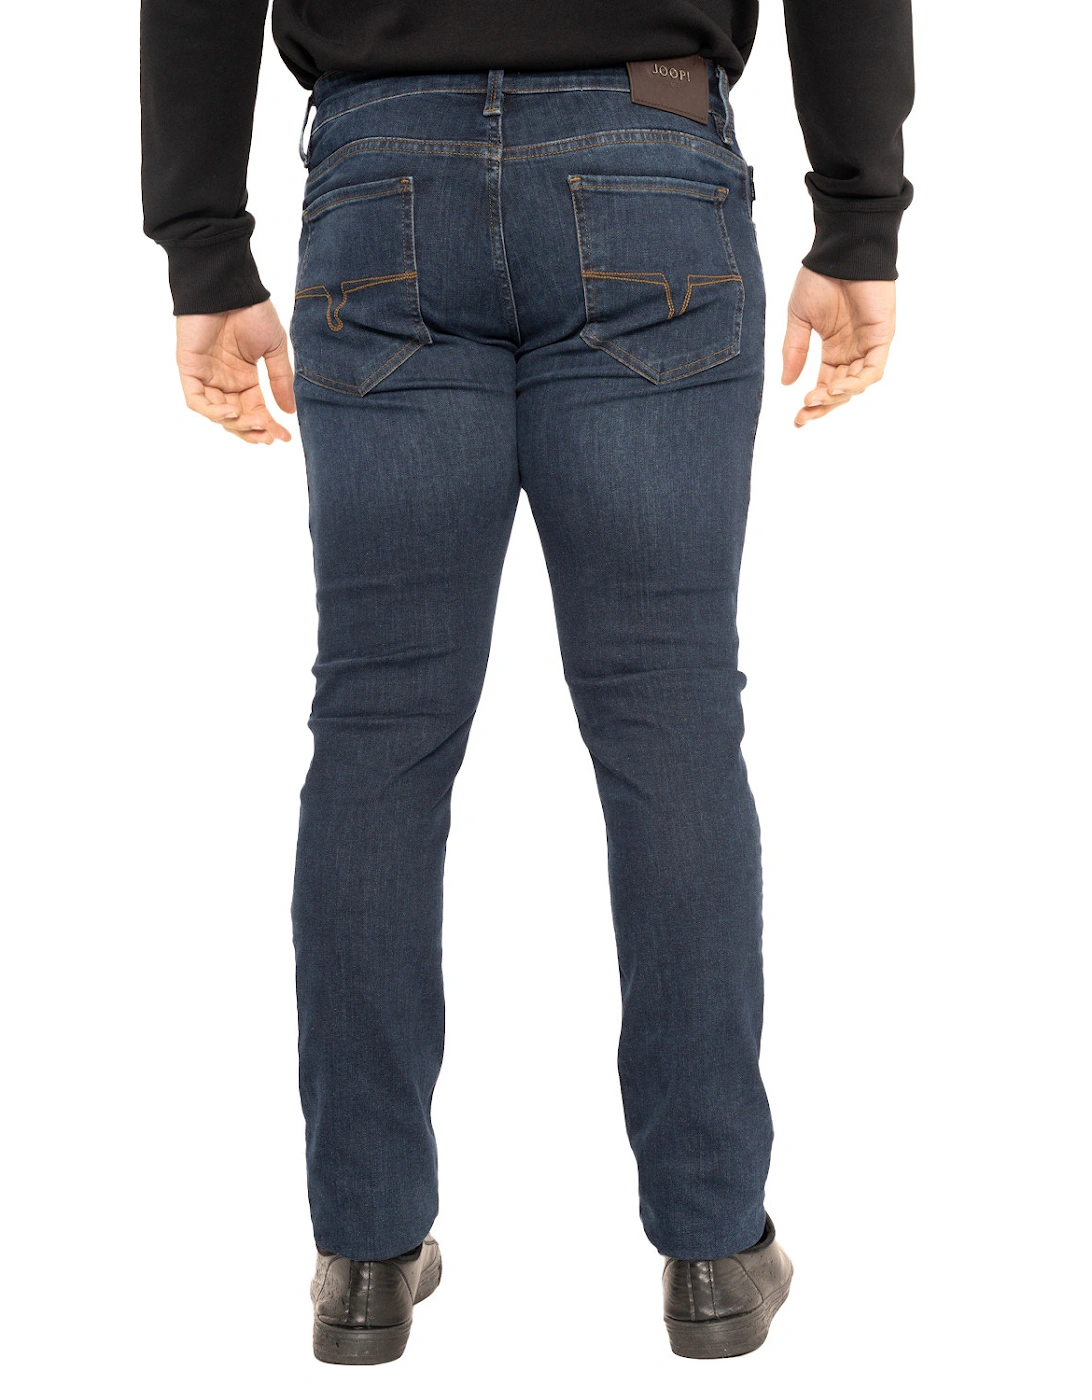 Joop Mitch Re-Flex Modern Fit Jean